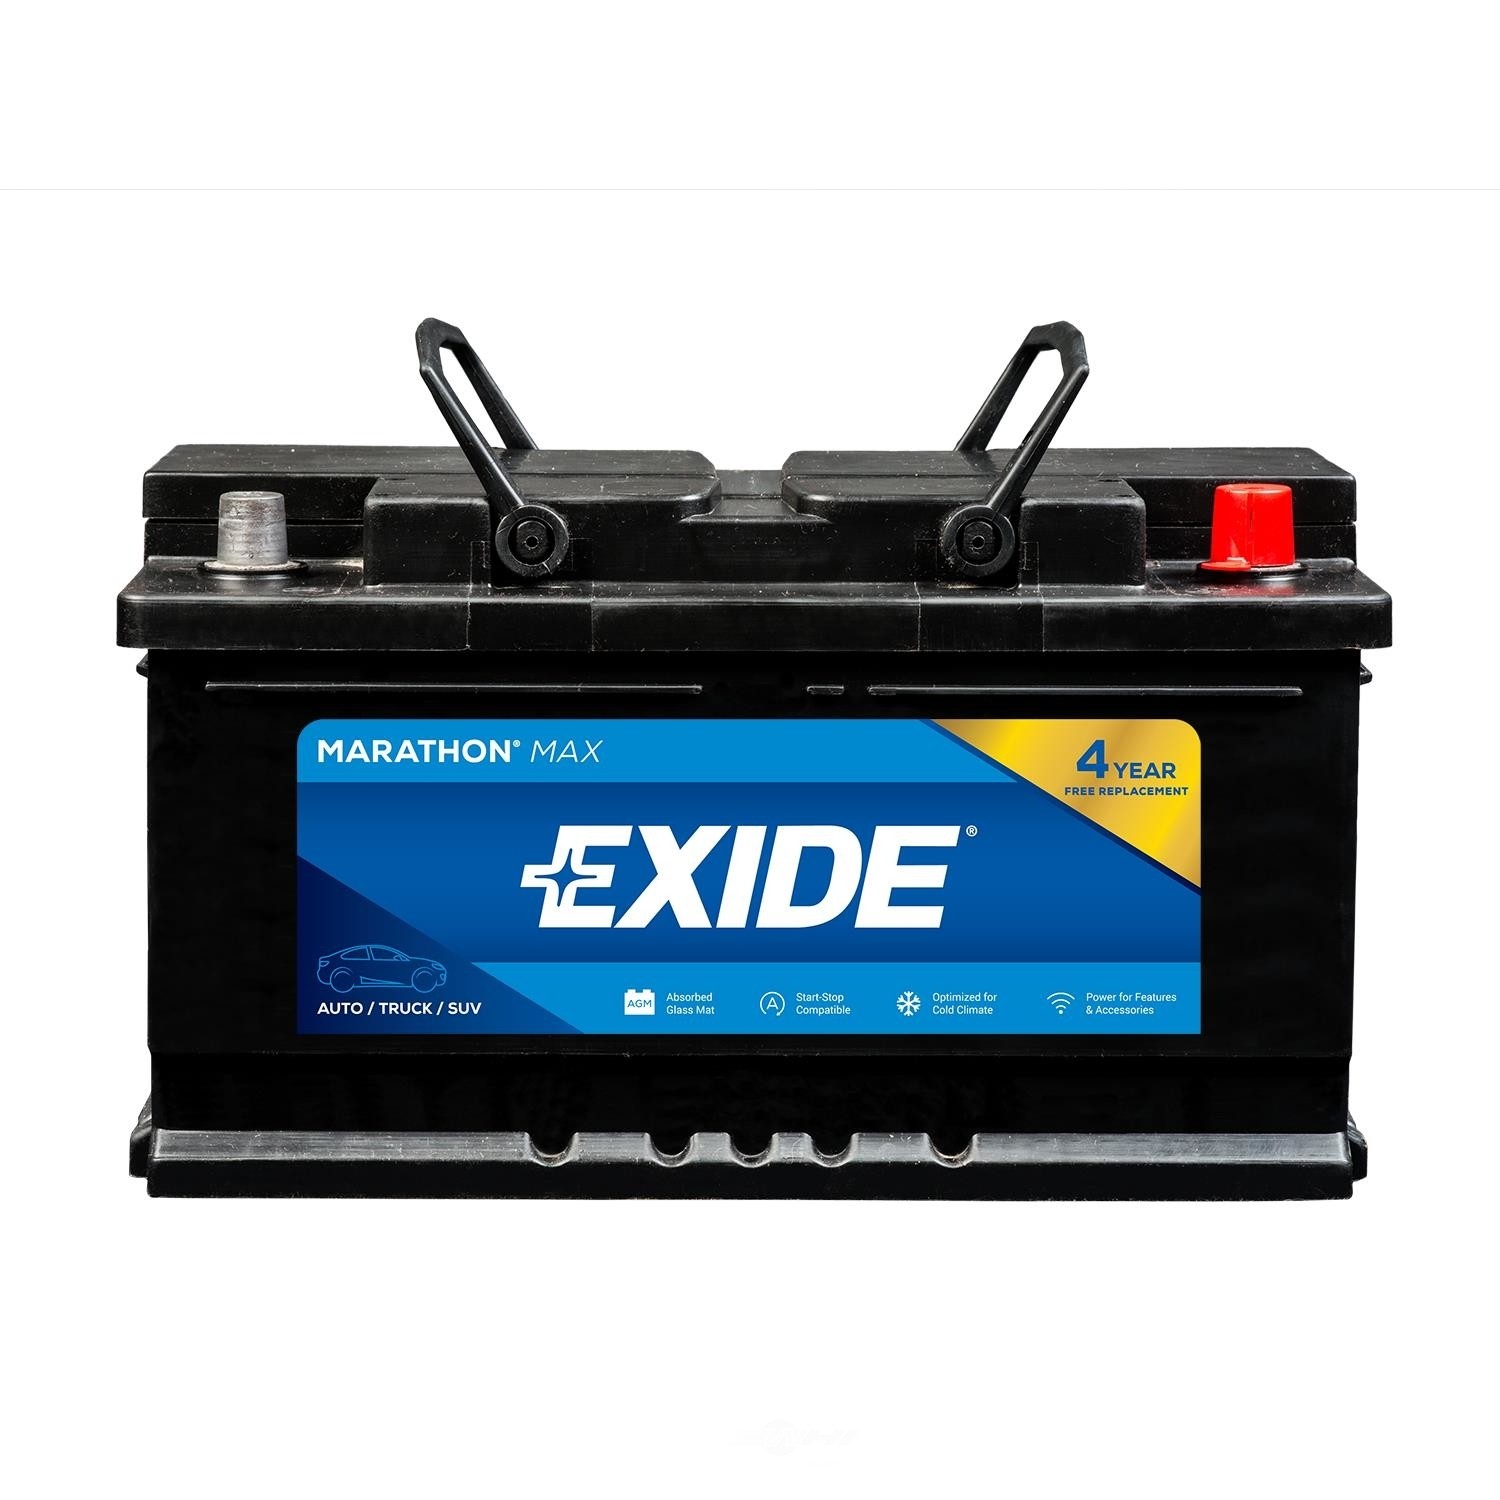 EXIDE BATTERIES - MARATHON MAX - CCA: 760 - EX1 MX-H6/L3/48